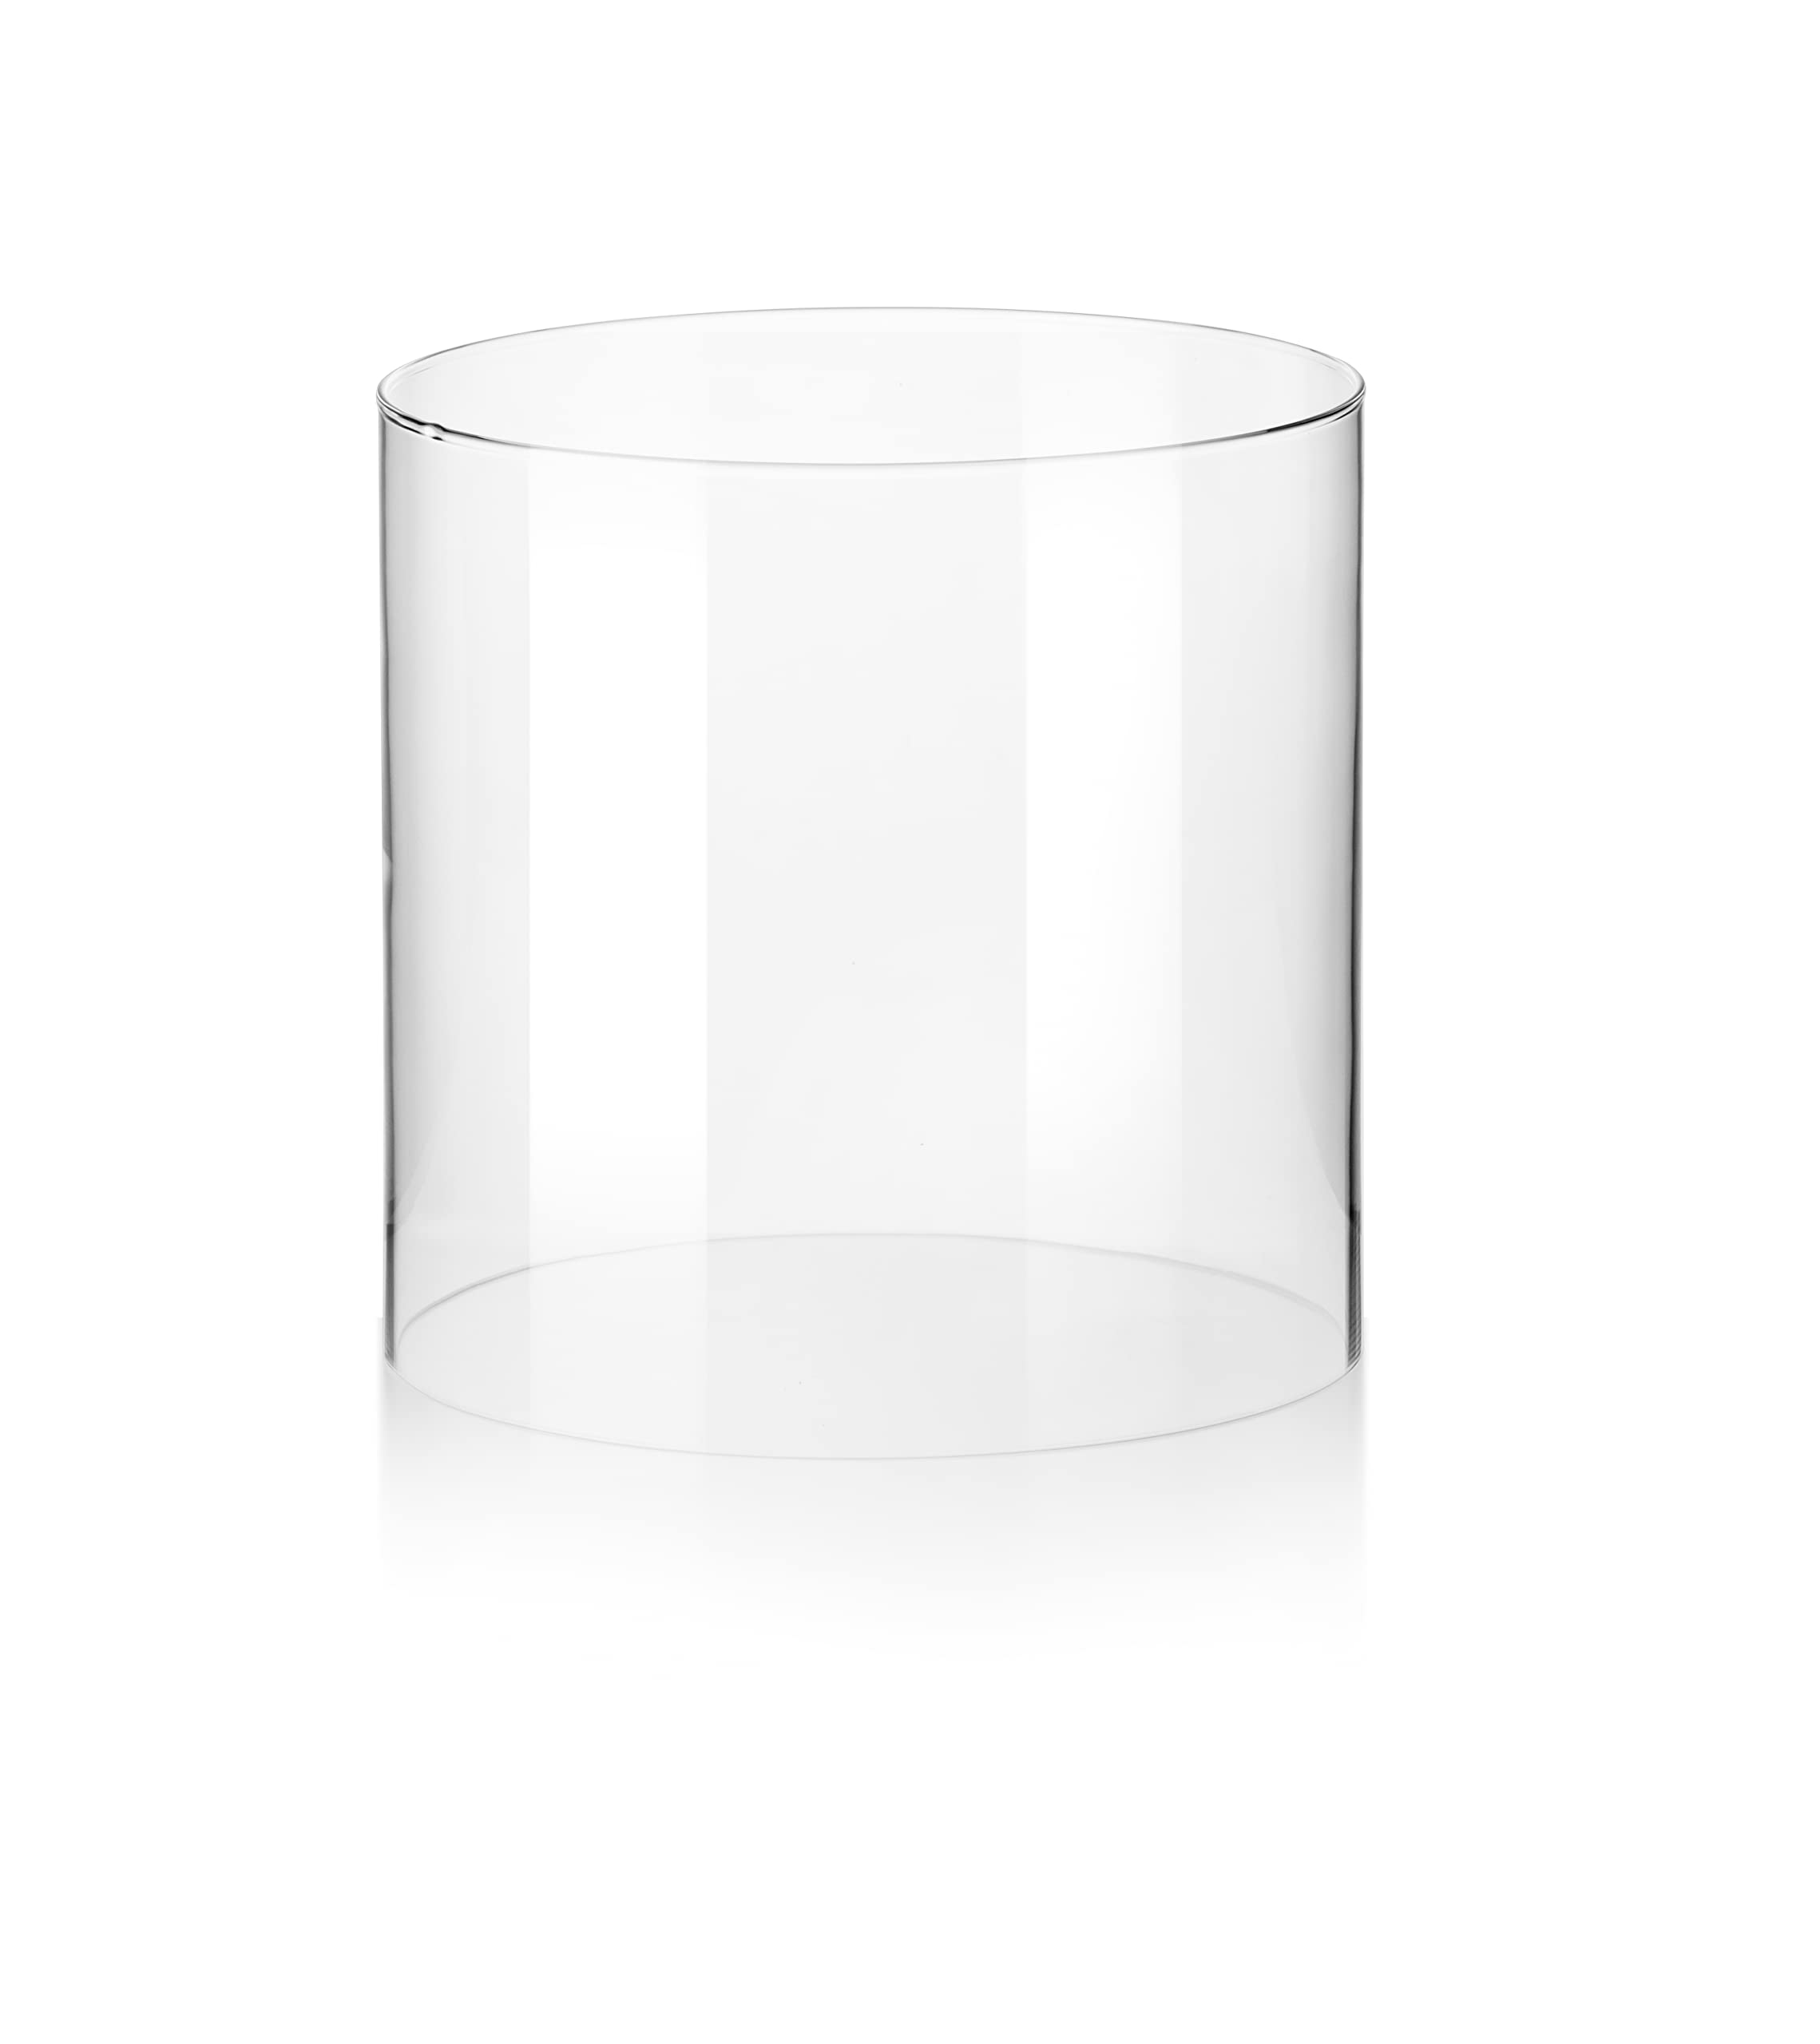 Glaszylinder ohne Boden für Windlicht | Verschiedene Größen von Varia Living | auch als Ersatzglas | für draußen und innen | offenes Glasrohr groß | transparent (Ø 24 cm | H 24 cm)